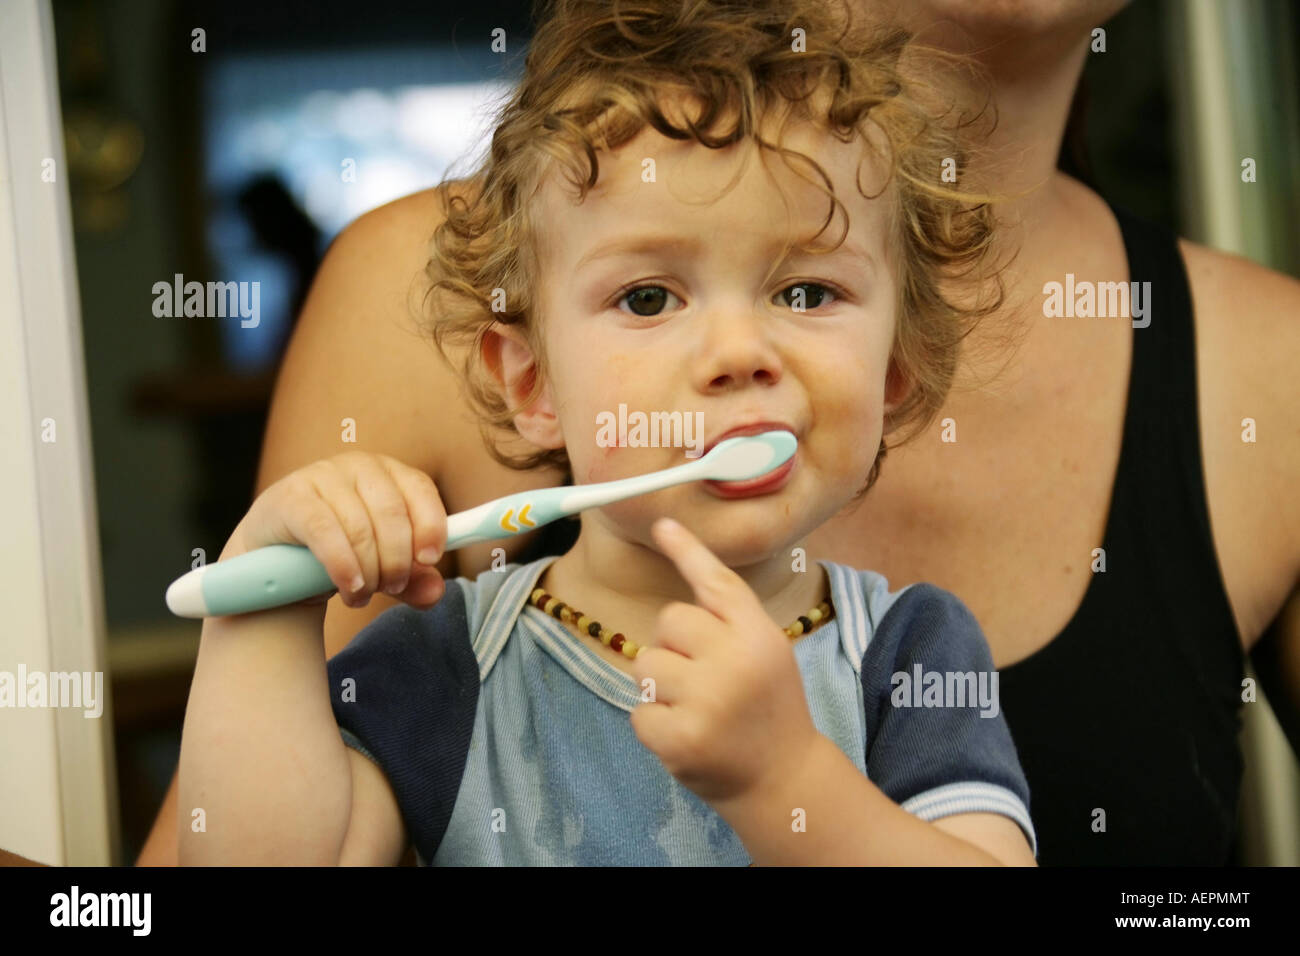 Kleinkind 18 Monate alt JONI mit Bernsteinkette putzt nach dem Essen mit verschmiertem Gesicht seine Milchzaehne Model Released Stock Photo